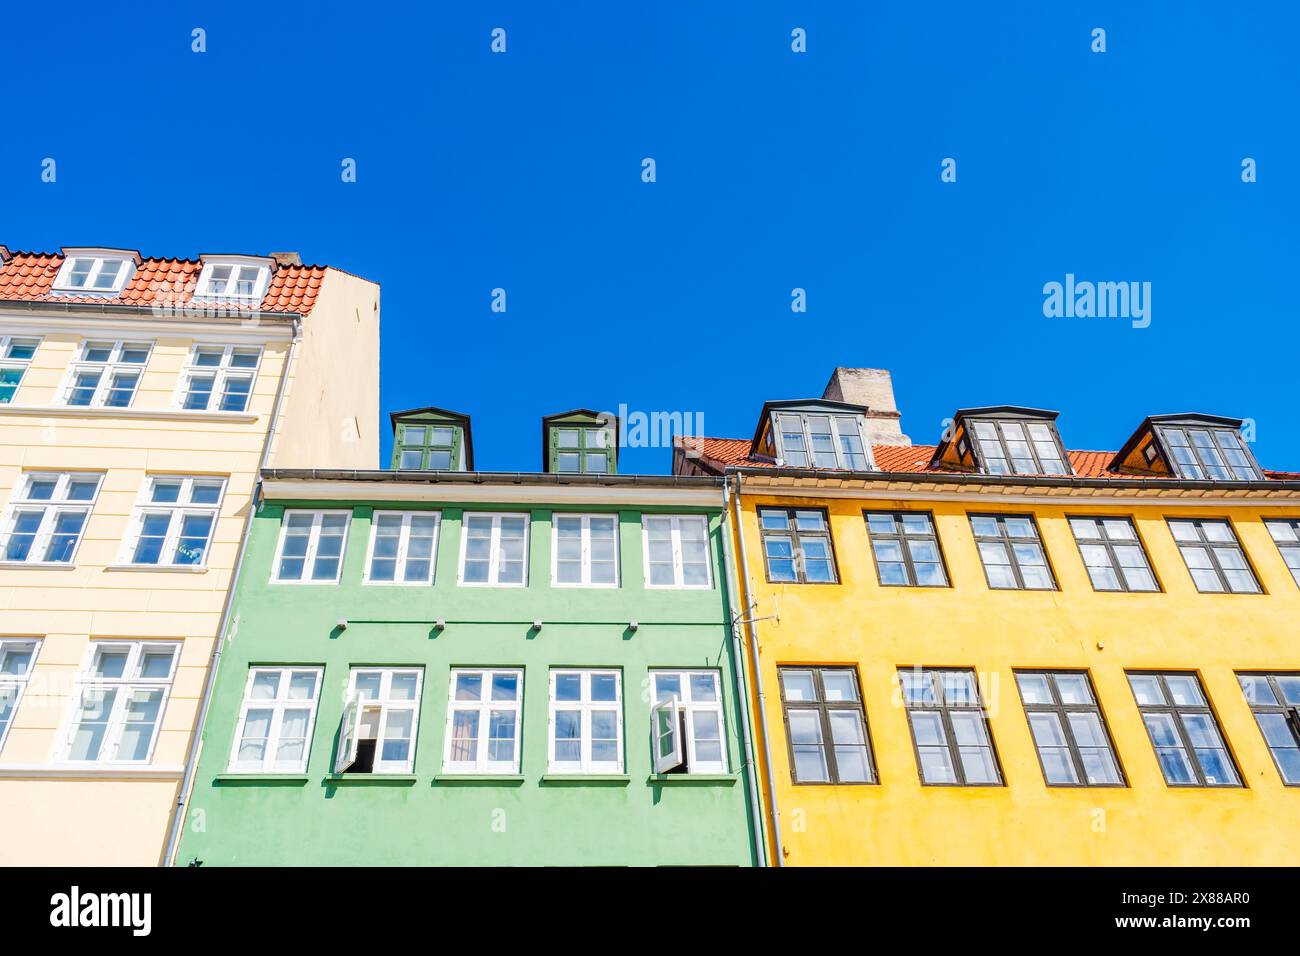 Façades colorées de vieilles maisons le long du quai Nyhavn à Copenhague - vue vers le haut. Danemark Banque D'Images